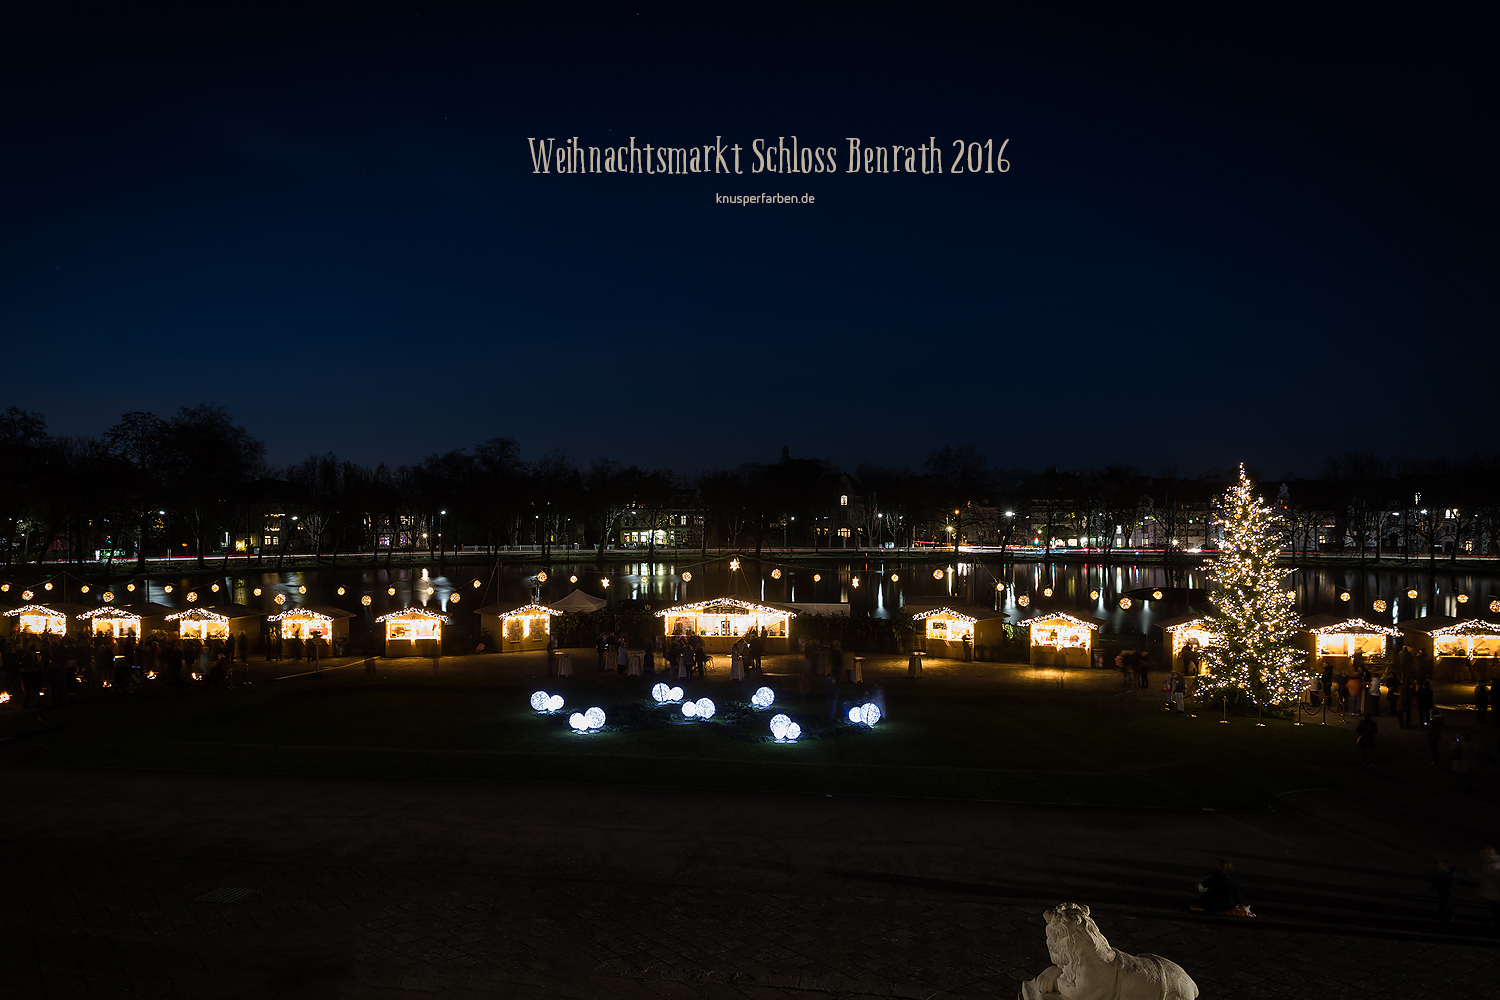 Weihnachtsmarkt Schloss Benrath